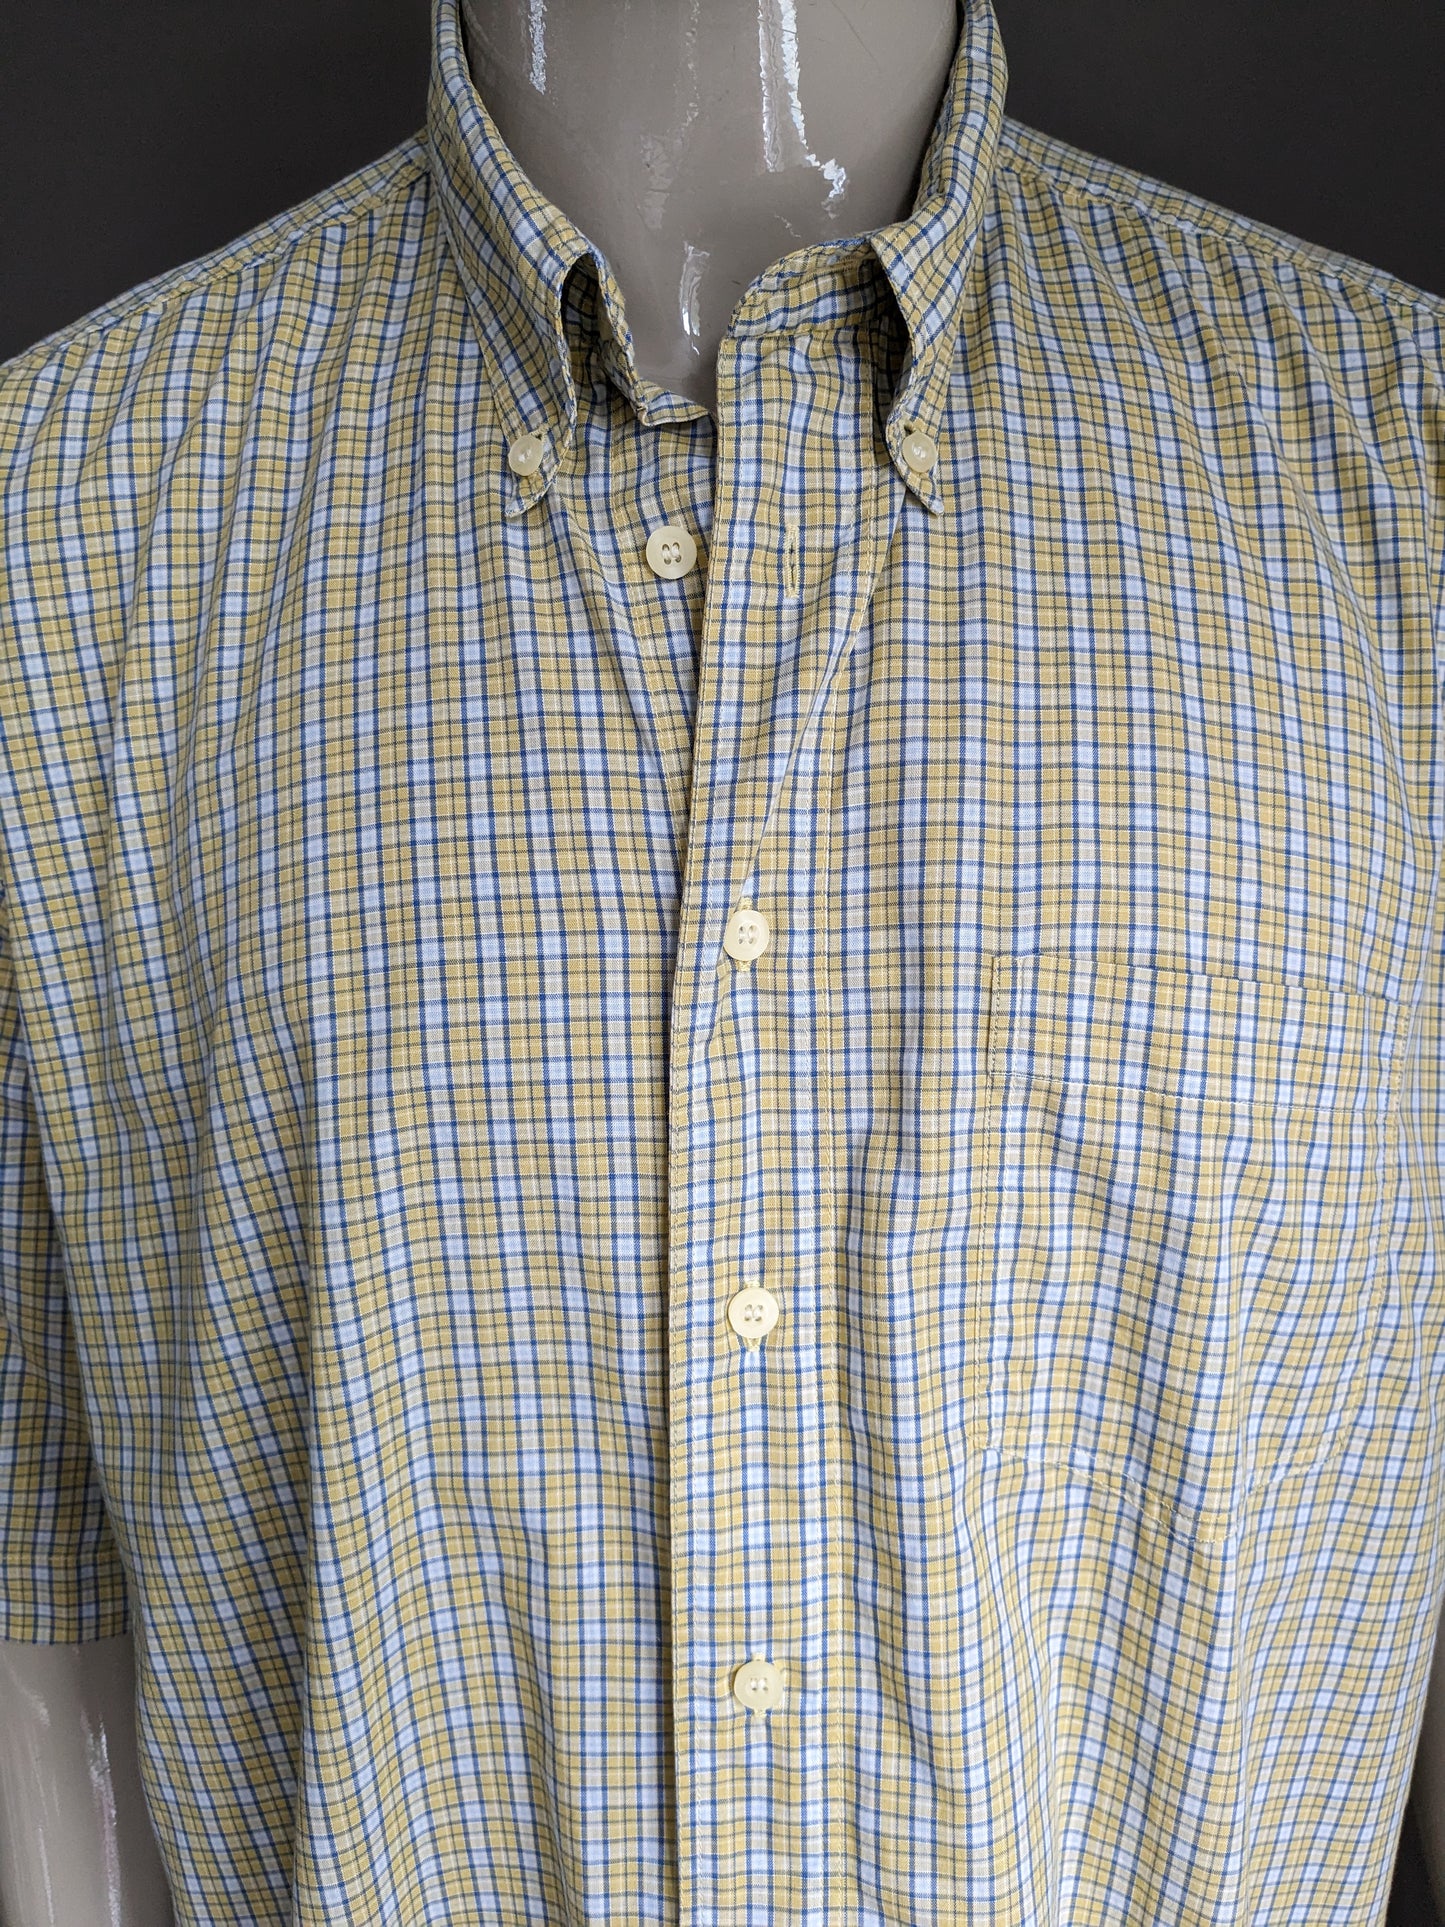 Burton Menswear Shirt Short Maniche. Scazzo a scacchi bianchi blu giallo. Dimensione XXL / 2XL.